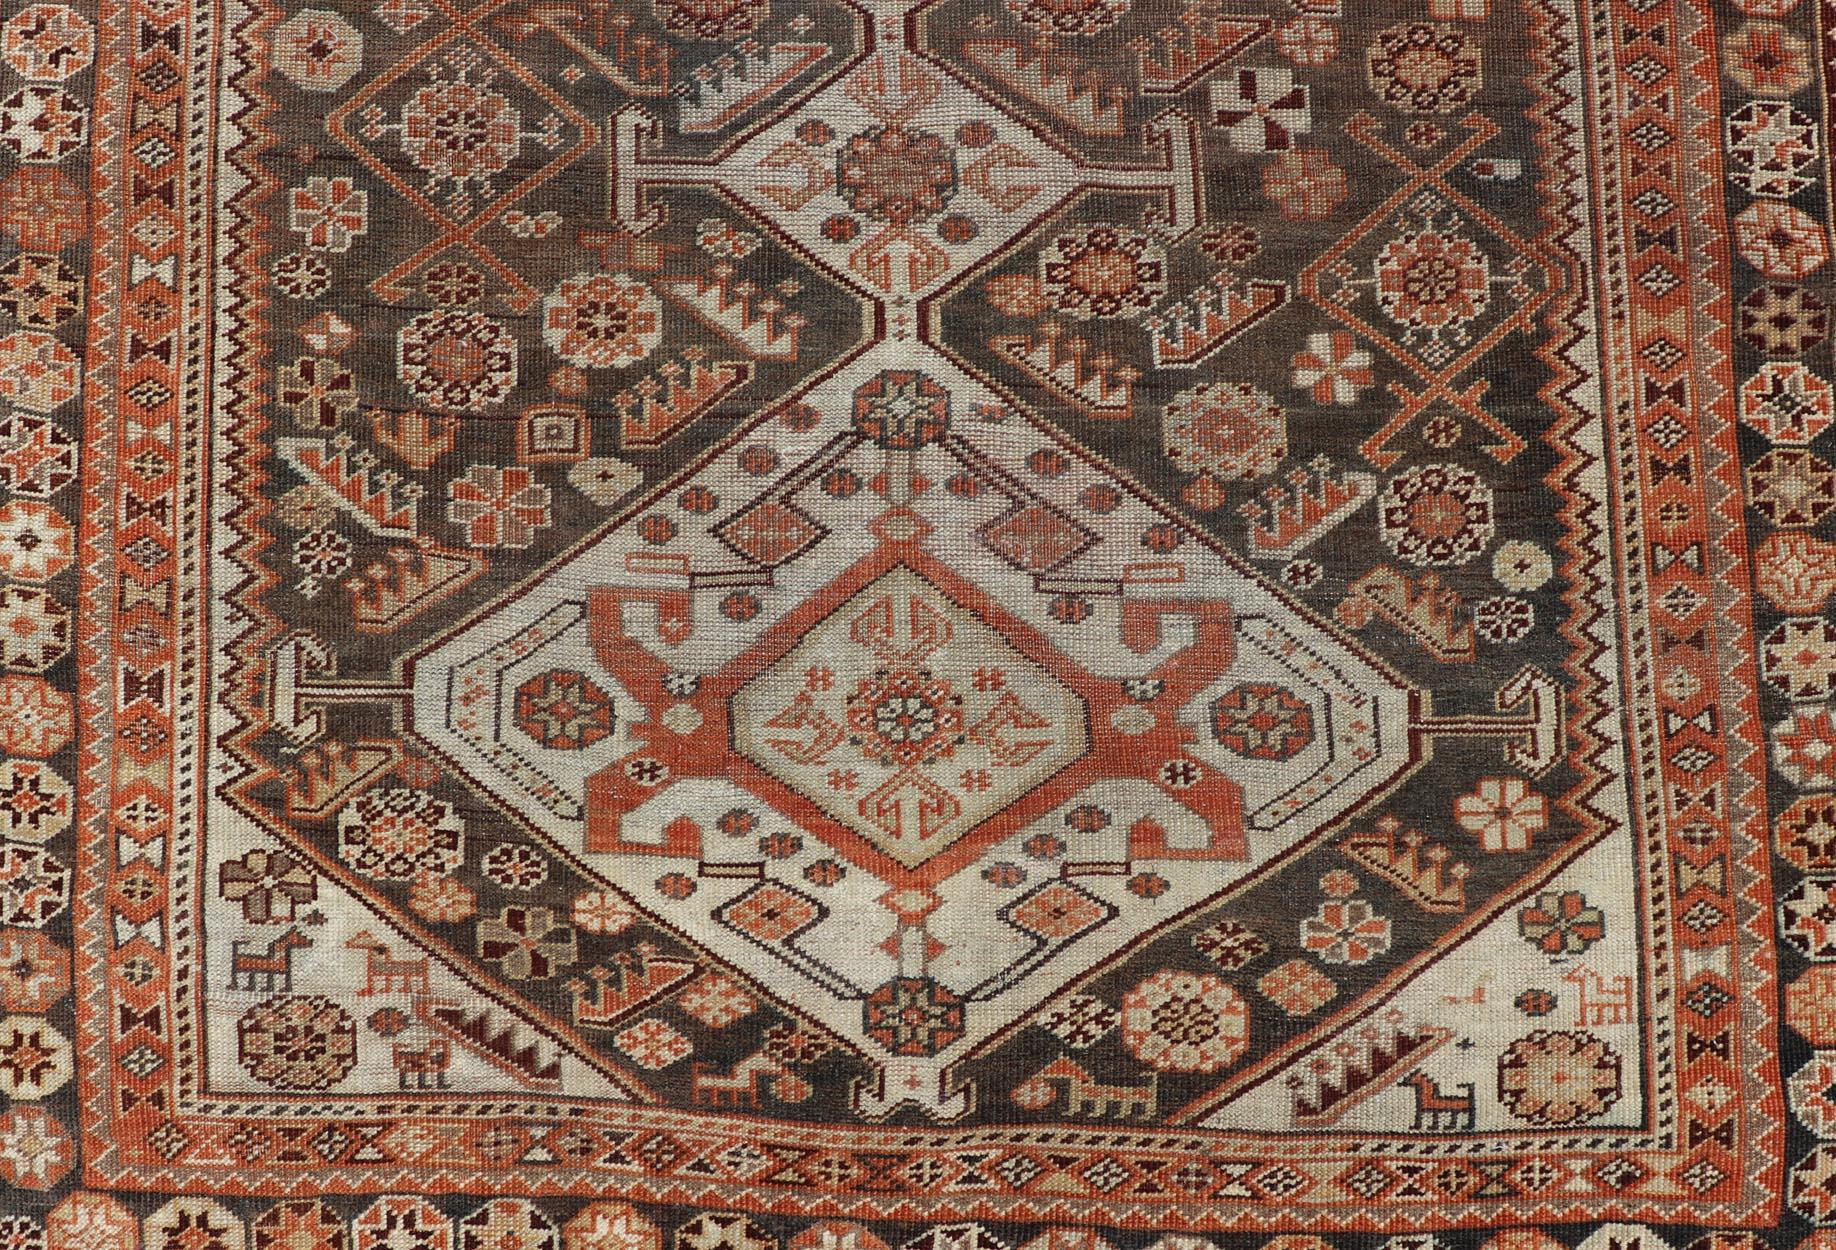 Mesures : 3'6 x 6'1.
Ce tapis antique persan Shiraz a été noué à la main en laine et présente un motif subgéométrique multicolore. Une bordure complémentaire à plusieurs niveaux englobe la totalité de la pièce, ce qui lui permet de s'adapter